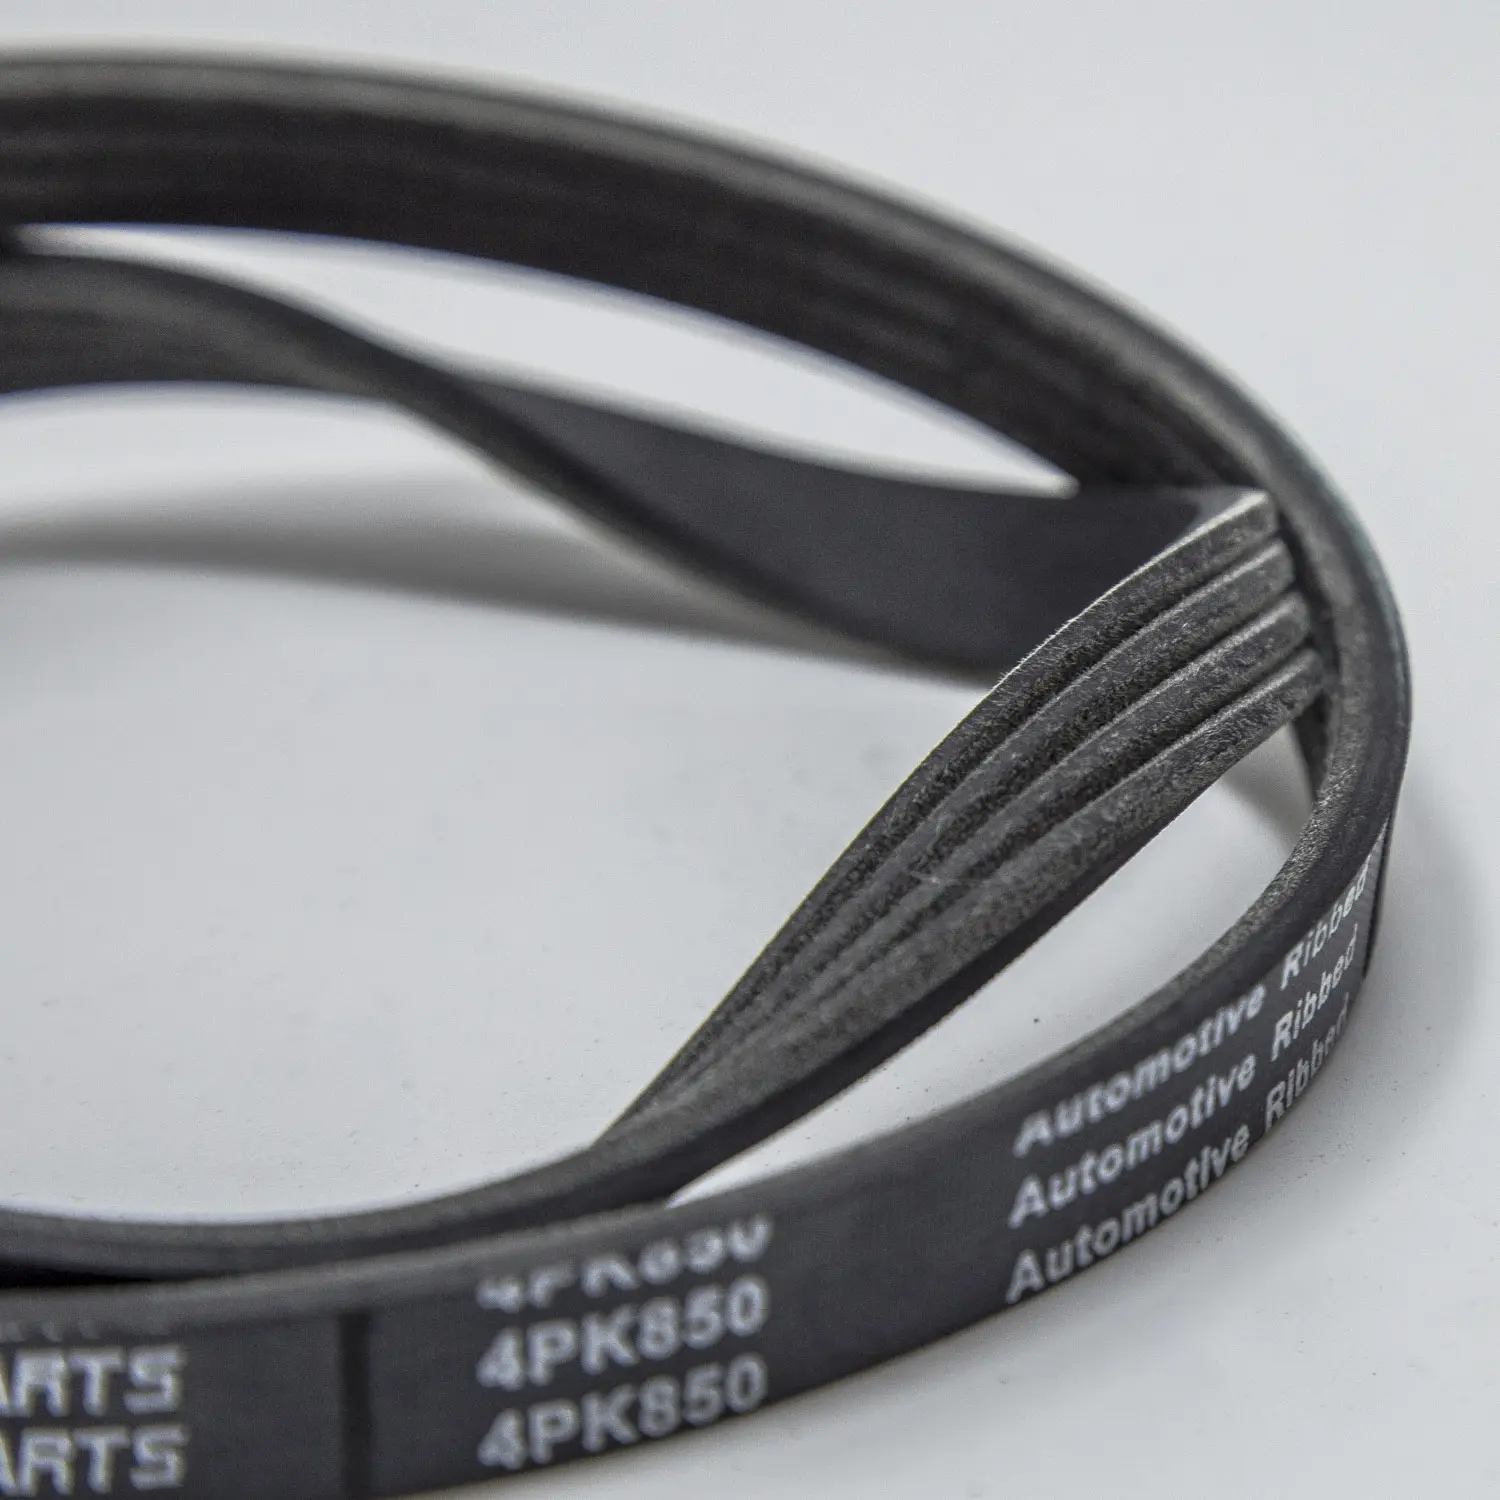 PK belt 4PK 675 fan belt 4PK Belt car accessories